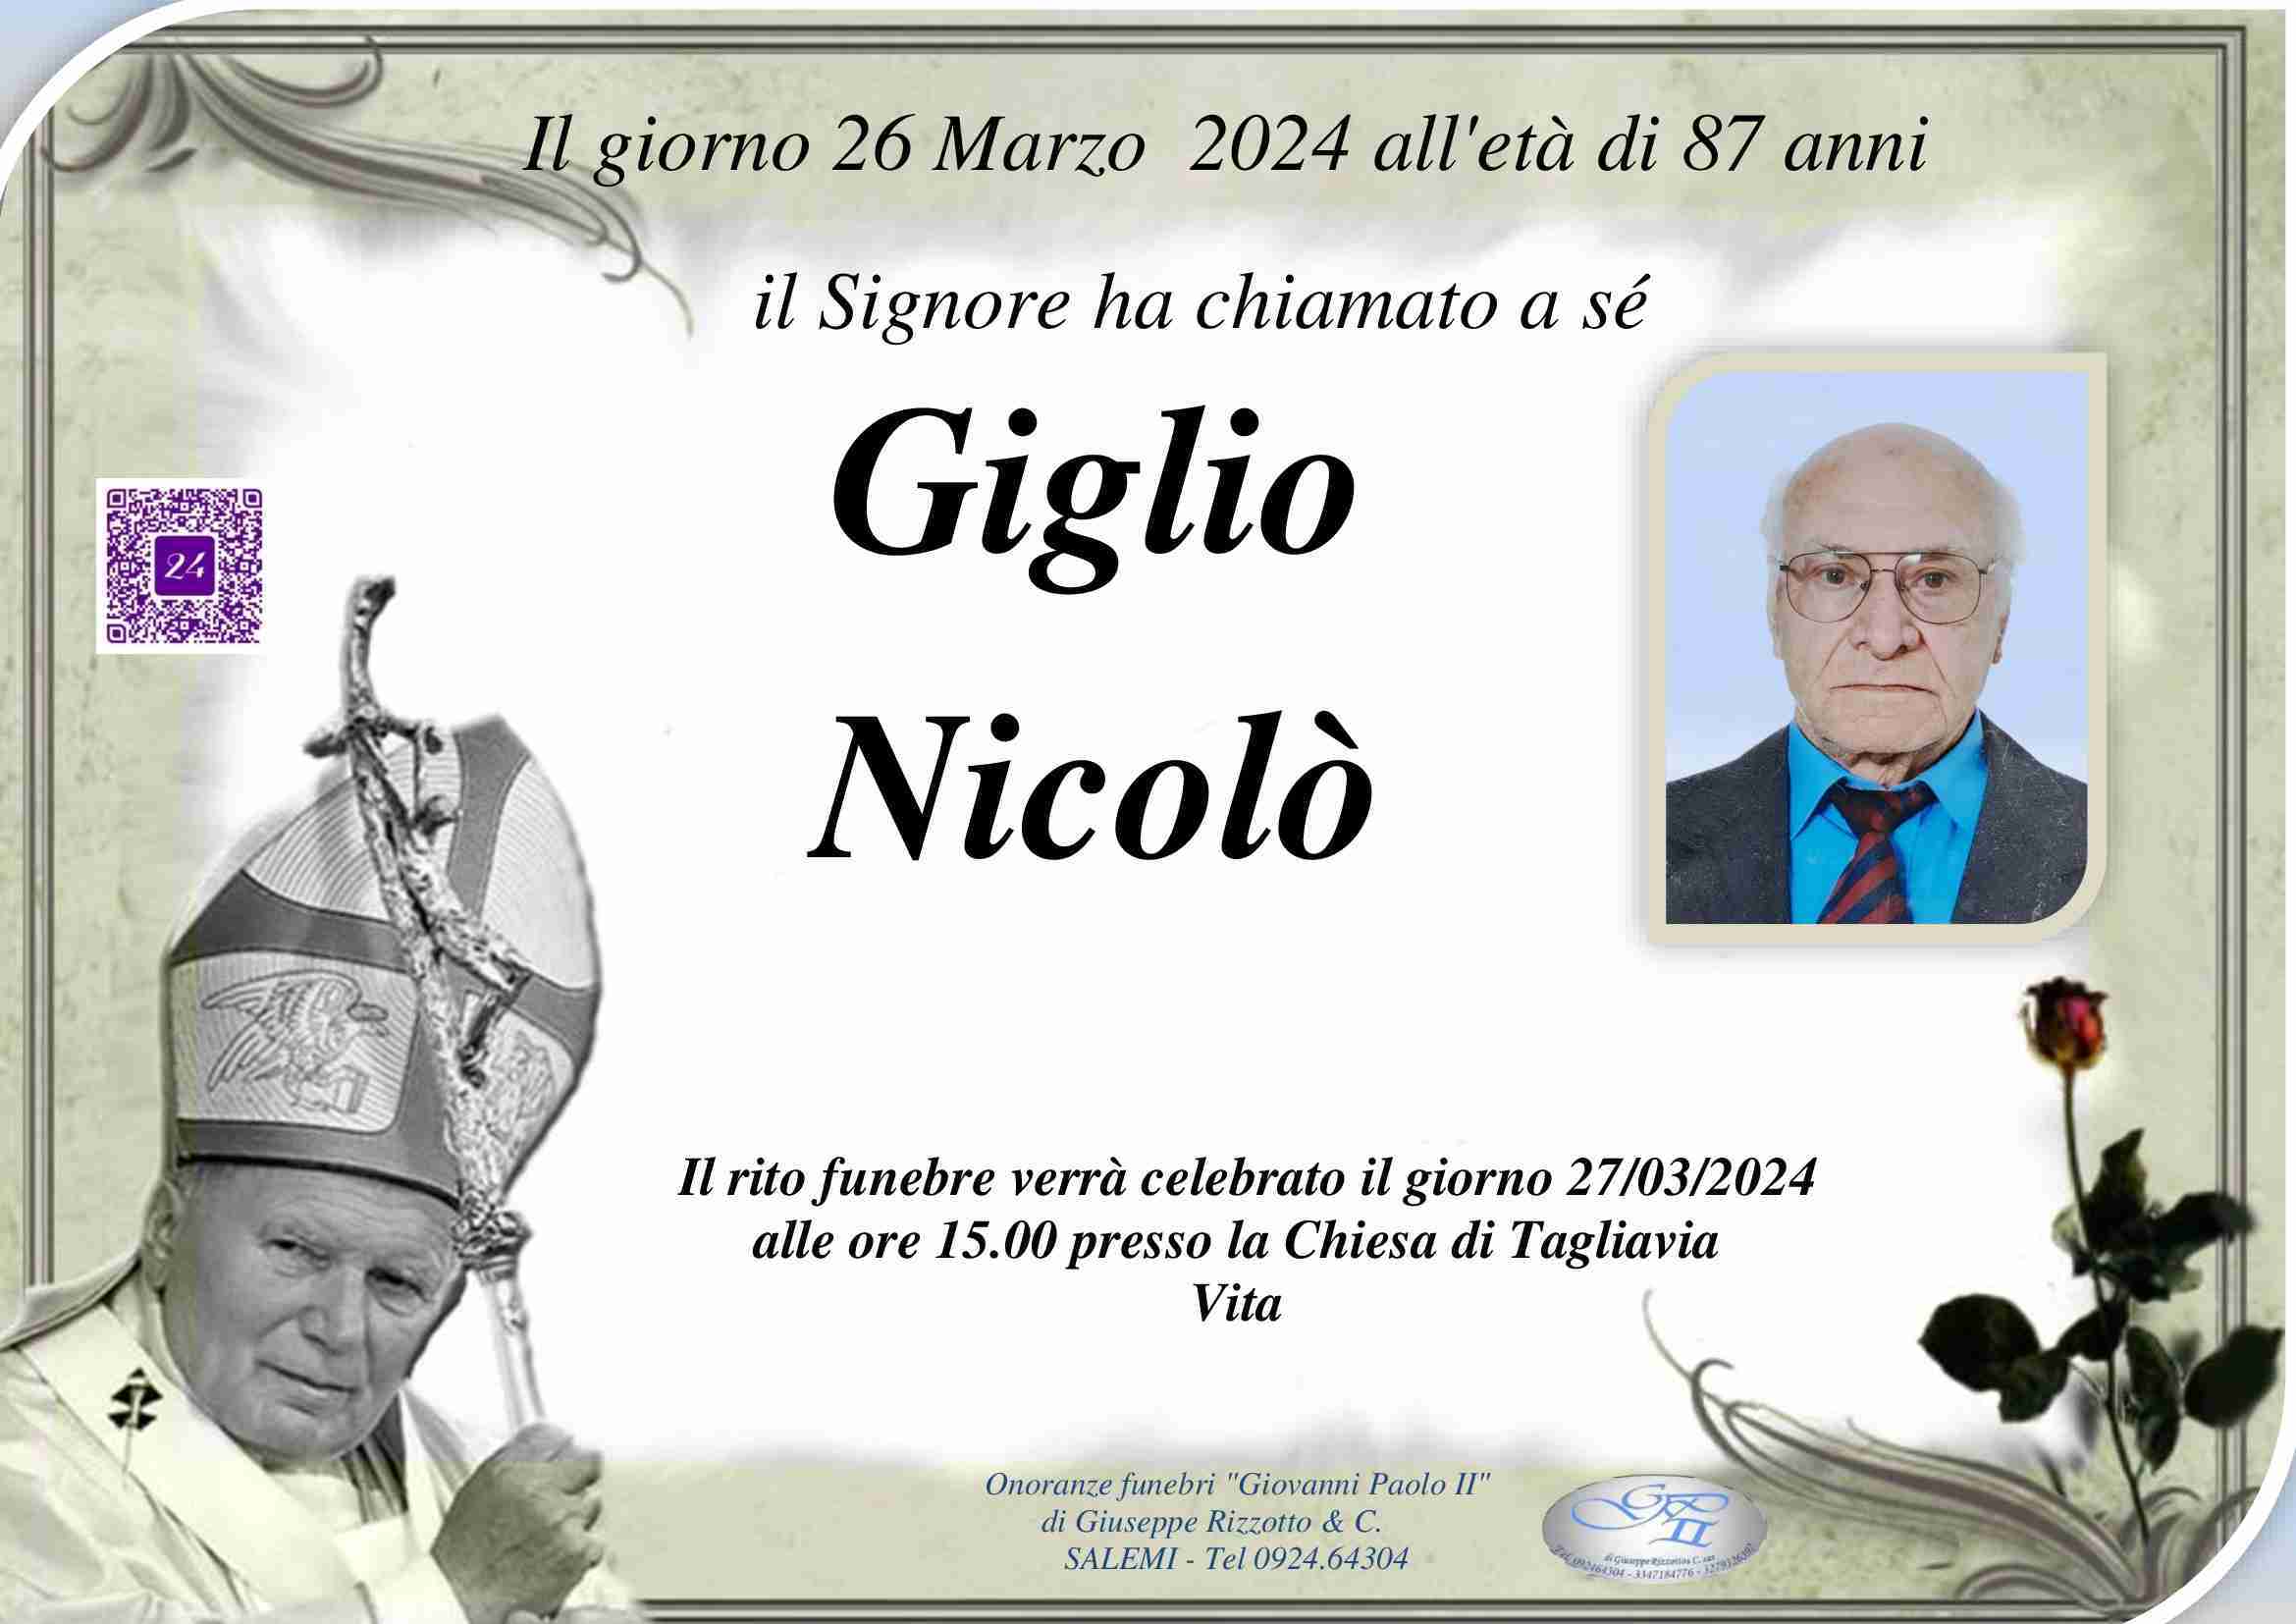 Nicolò Giglio